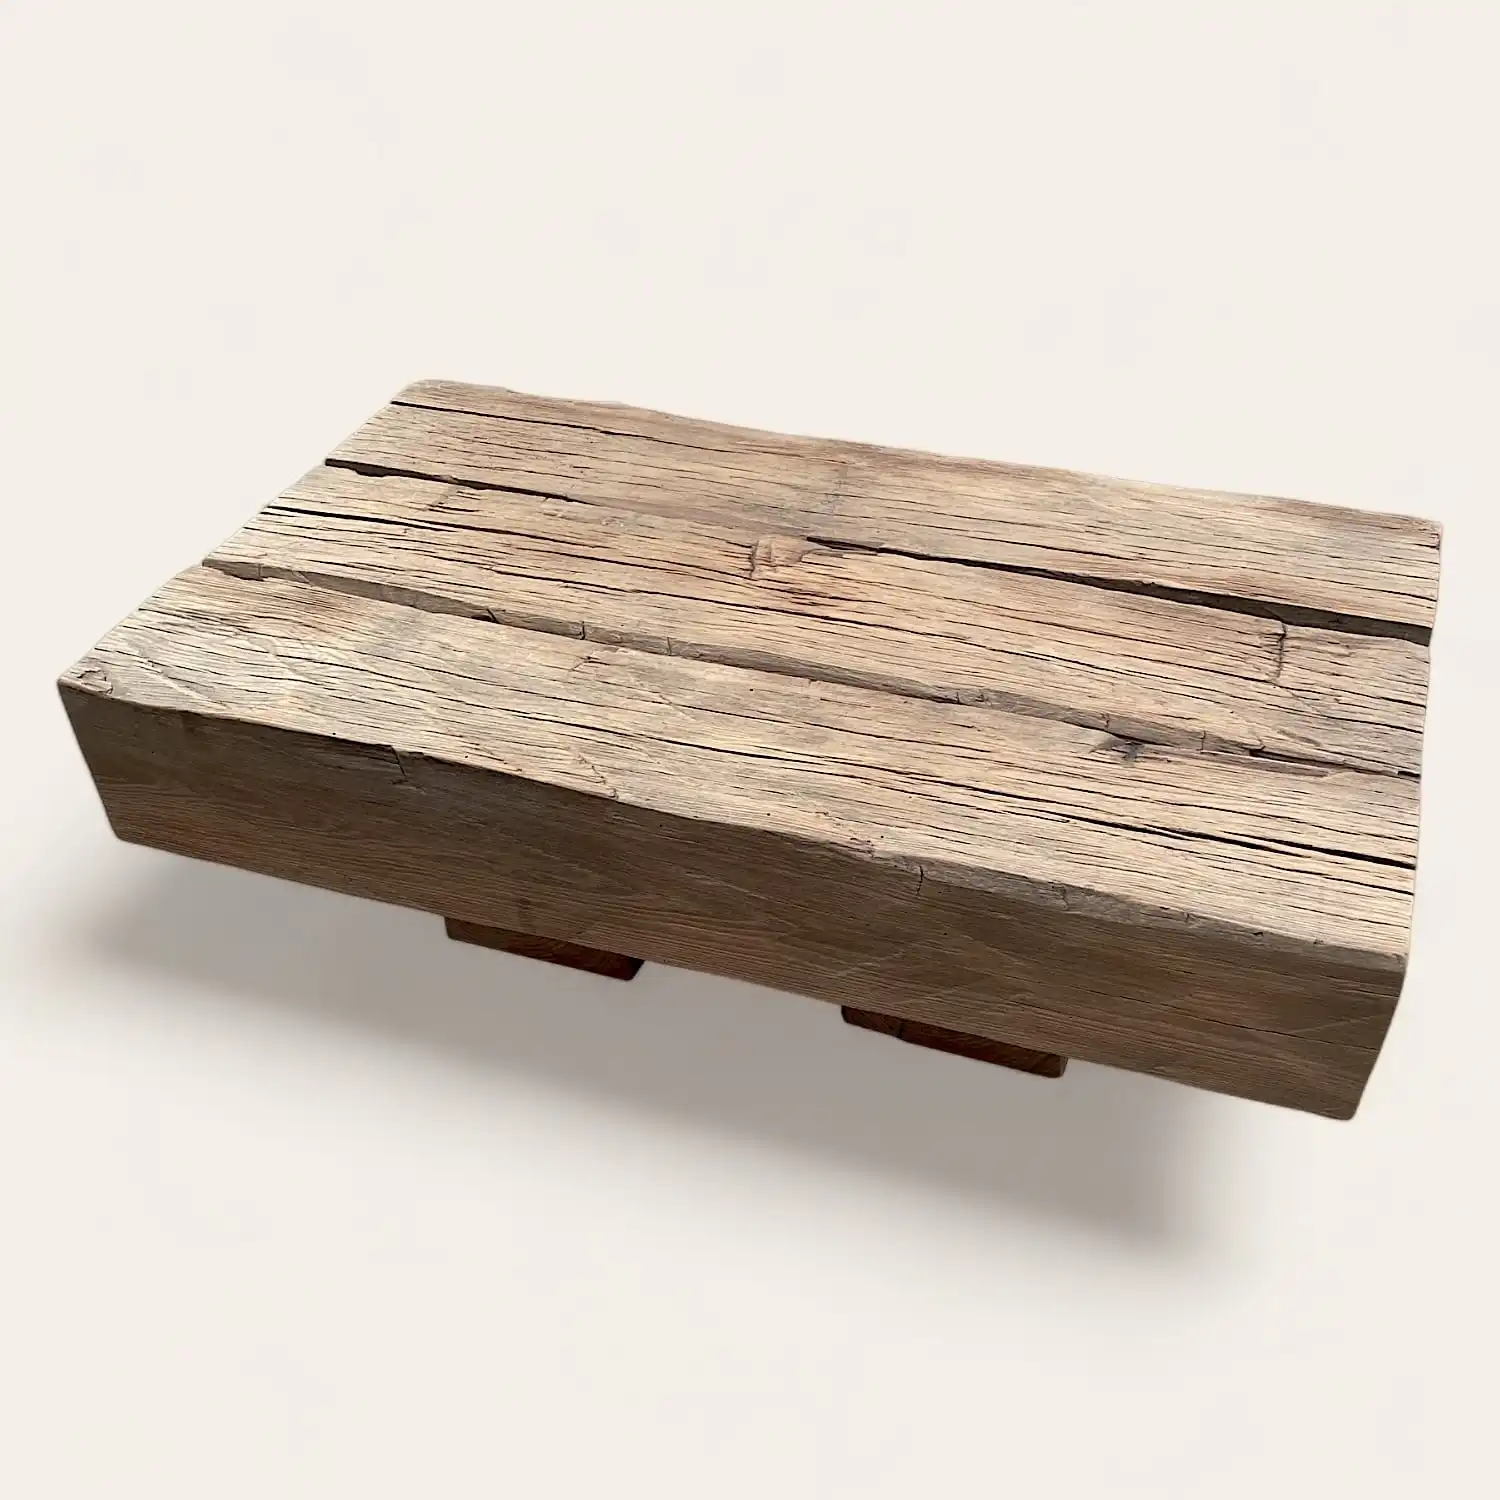  Une table basse rustique en bois fabriquée à partir de bois récupéré. 